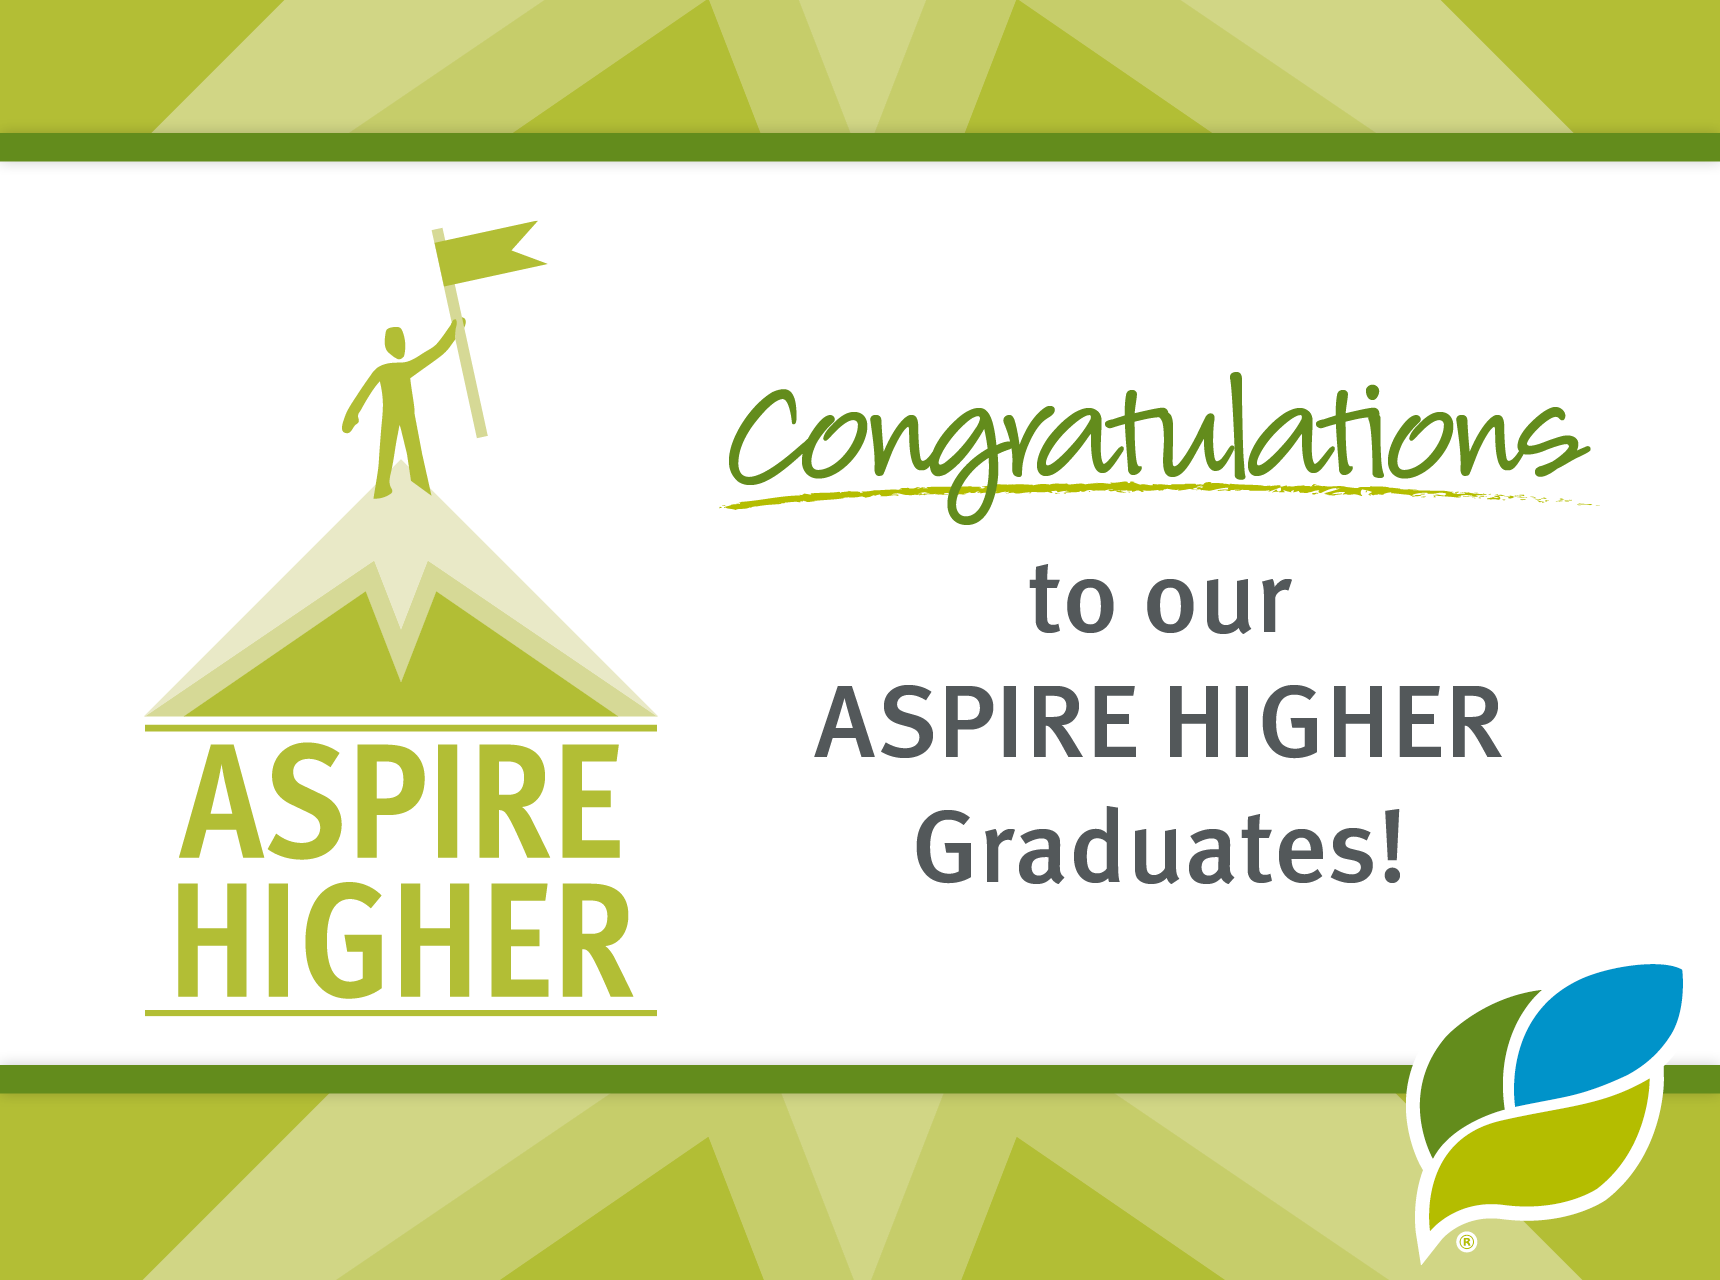 Congratulations to our ASPIRE HIGHER Graduates! Ohio's Hospice